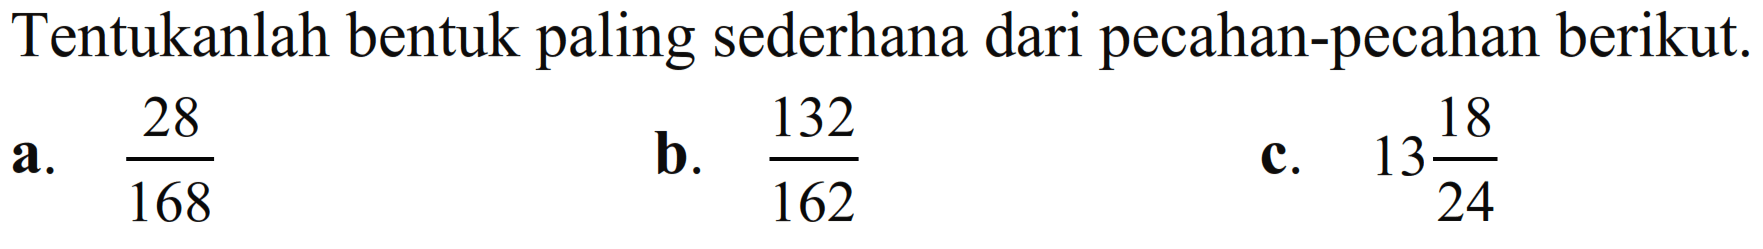 Tentukanlah bentuk paling sederhana dari pecahan-pecahan berikut. a. 28/168 b. 132/162 c. 13 18/24